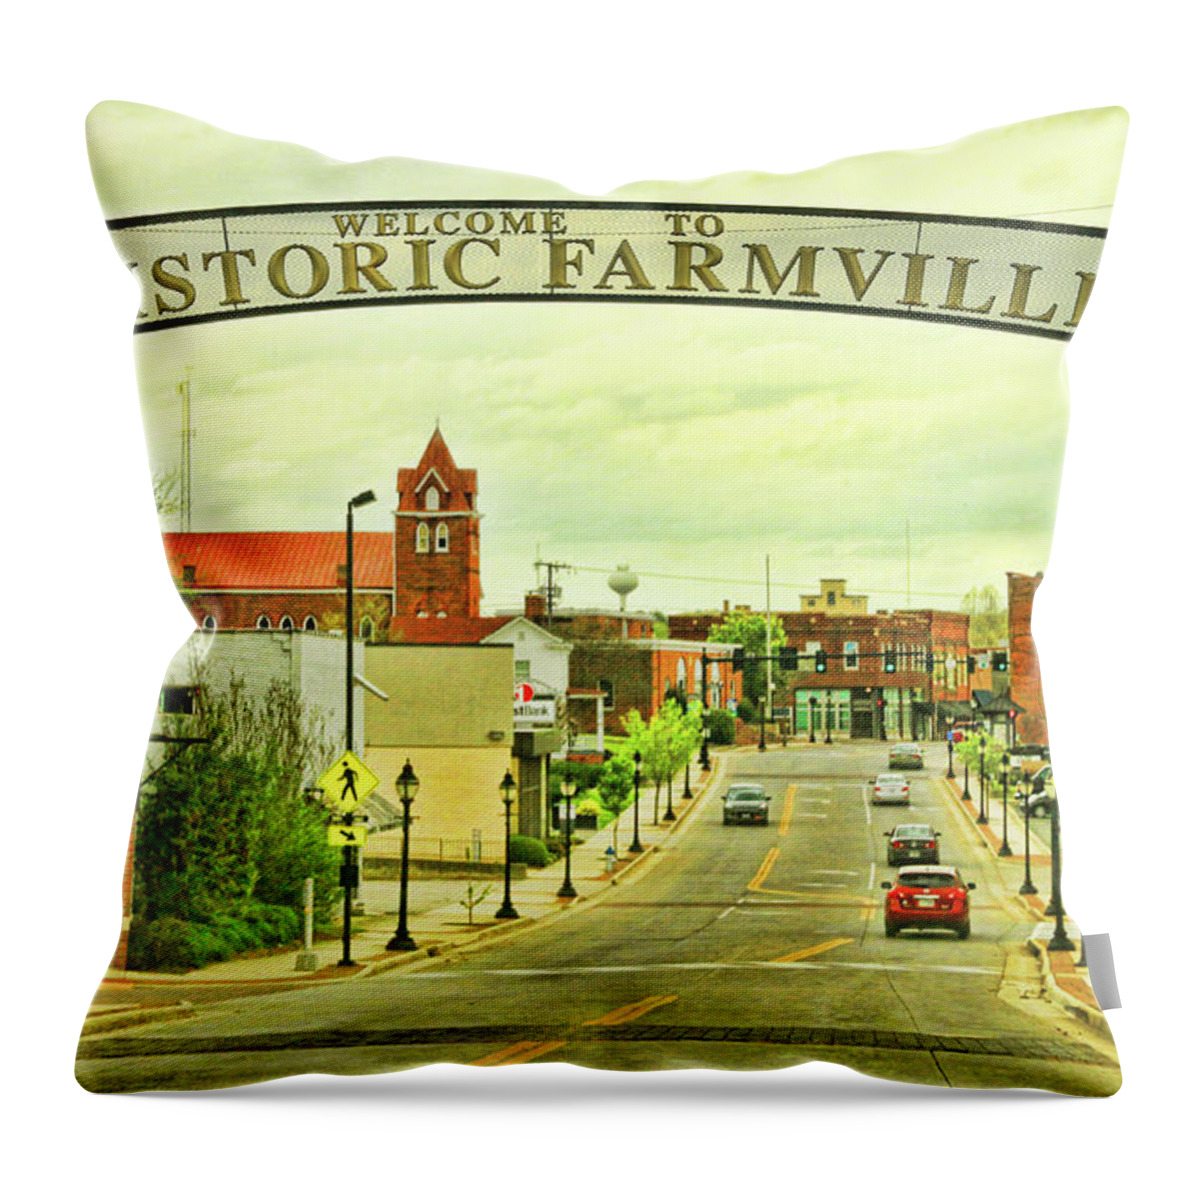 Farmville Throw Pillow featuring the photograph Historic Farmville Virginia by Ola Allen